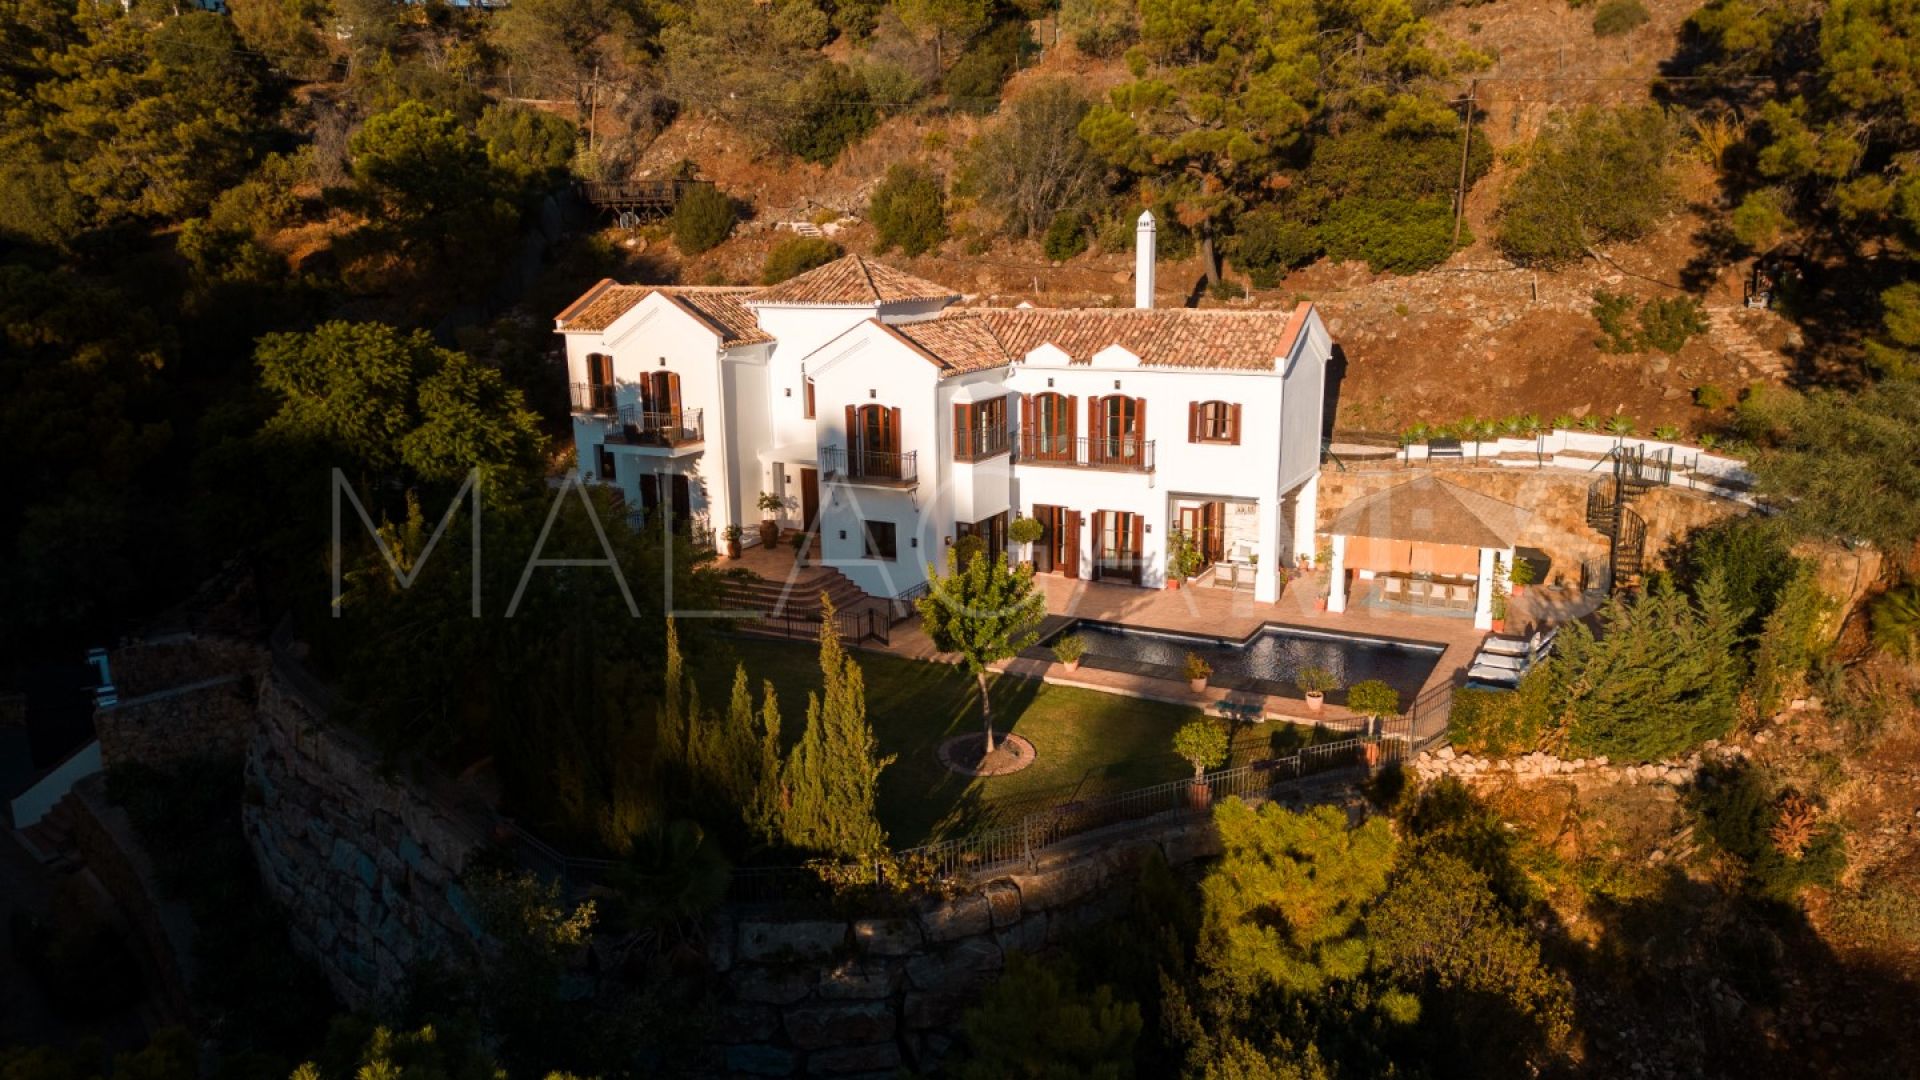 For sale El Madroñal villa with 6 bedrooms